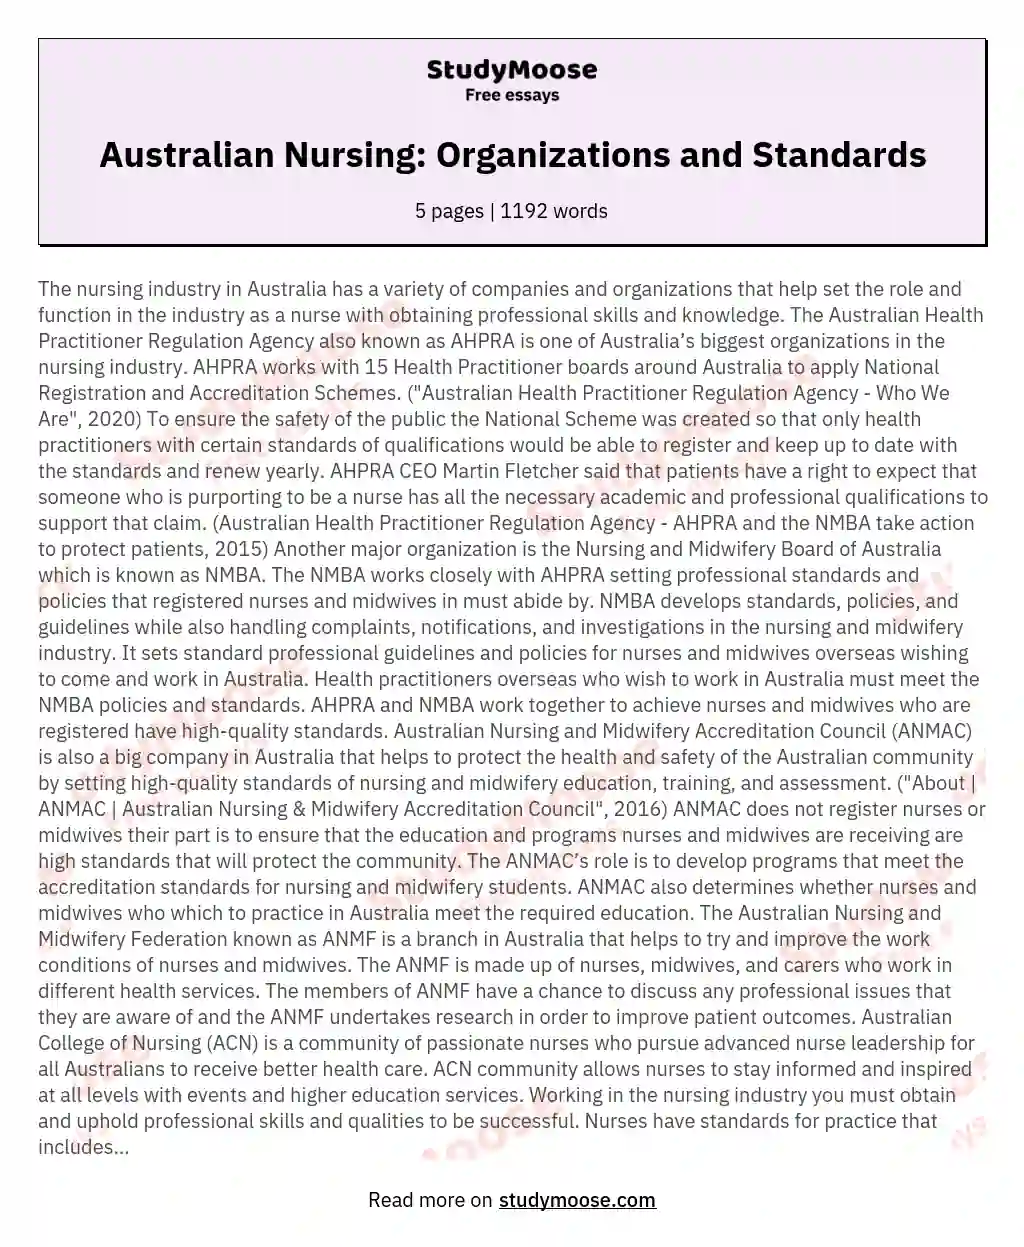 Australian Nursing: Organizations and Standards essay